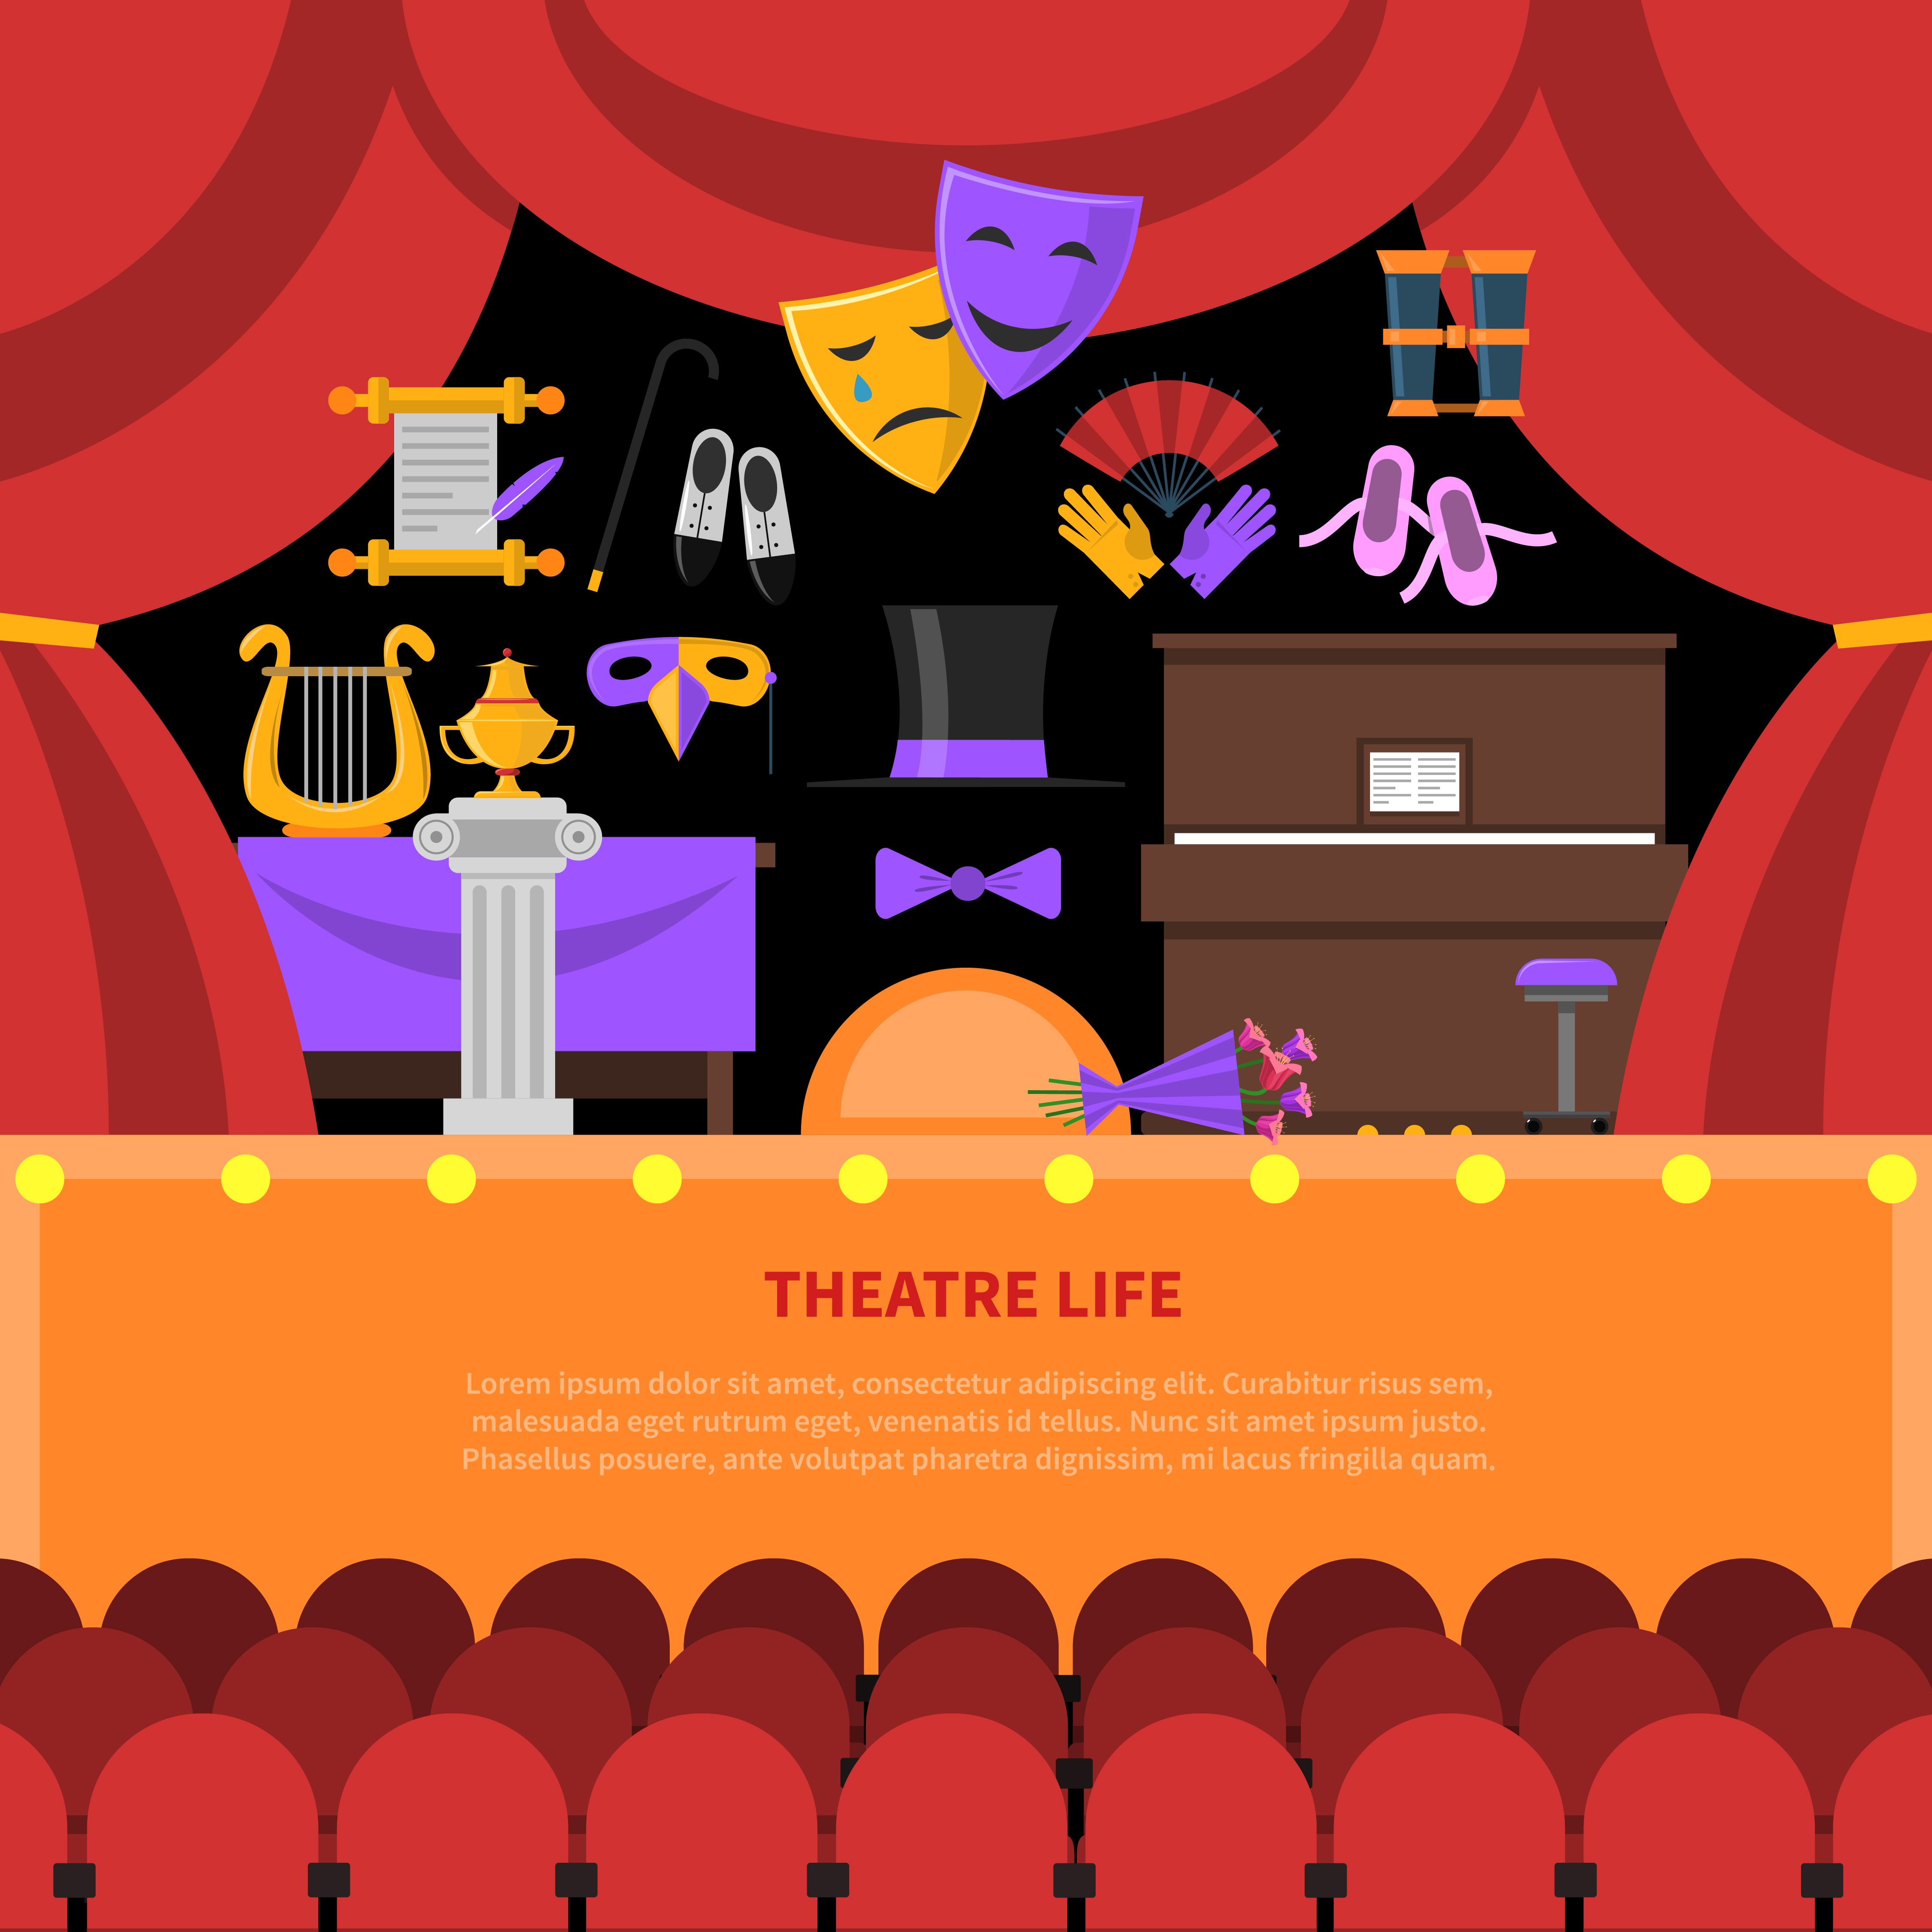 Life is theatre